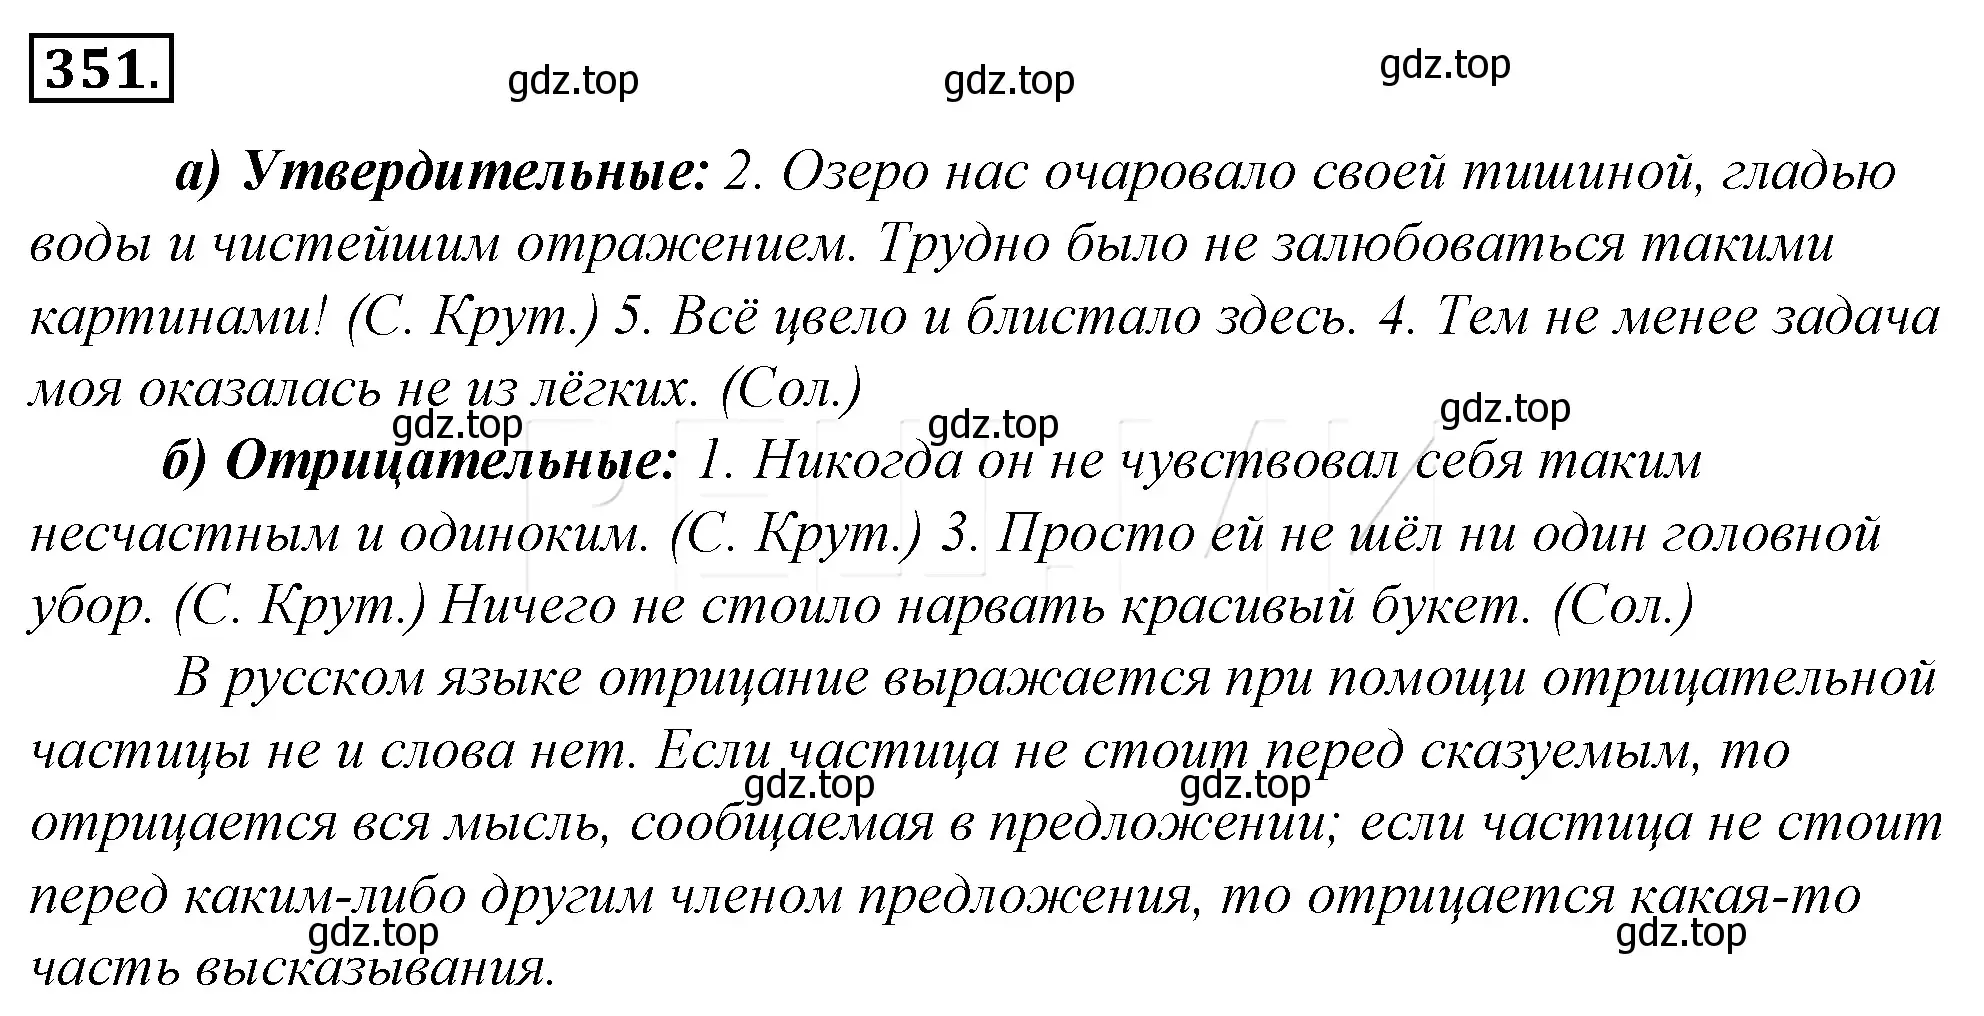 Решение 4. номер 16 (страница 23) гдз по русскому языку 10-11 класс Гольцова, Шамшин, учебник 2 часть